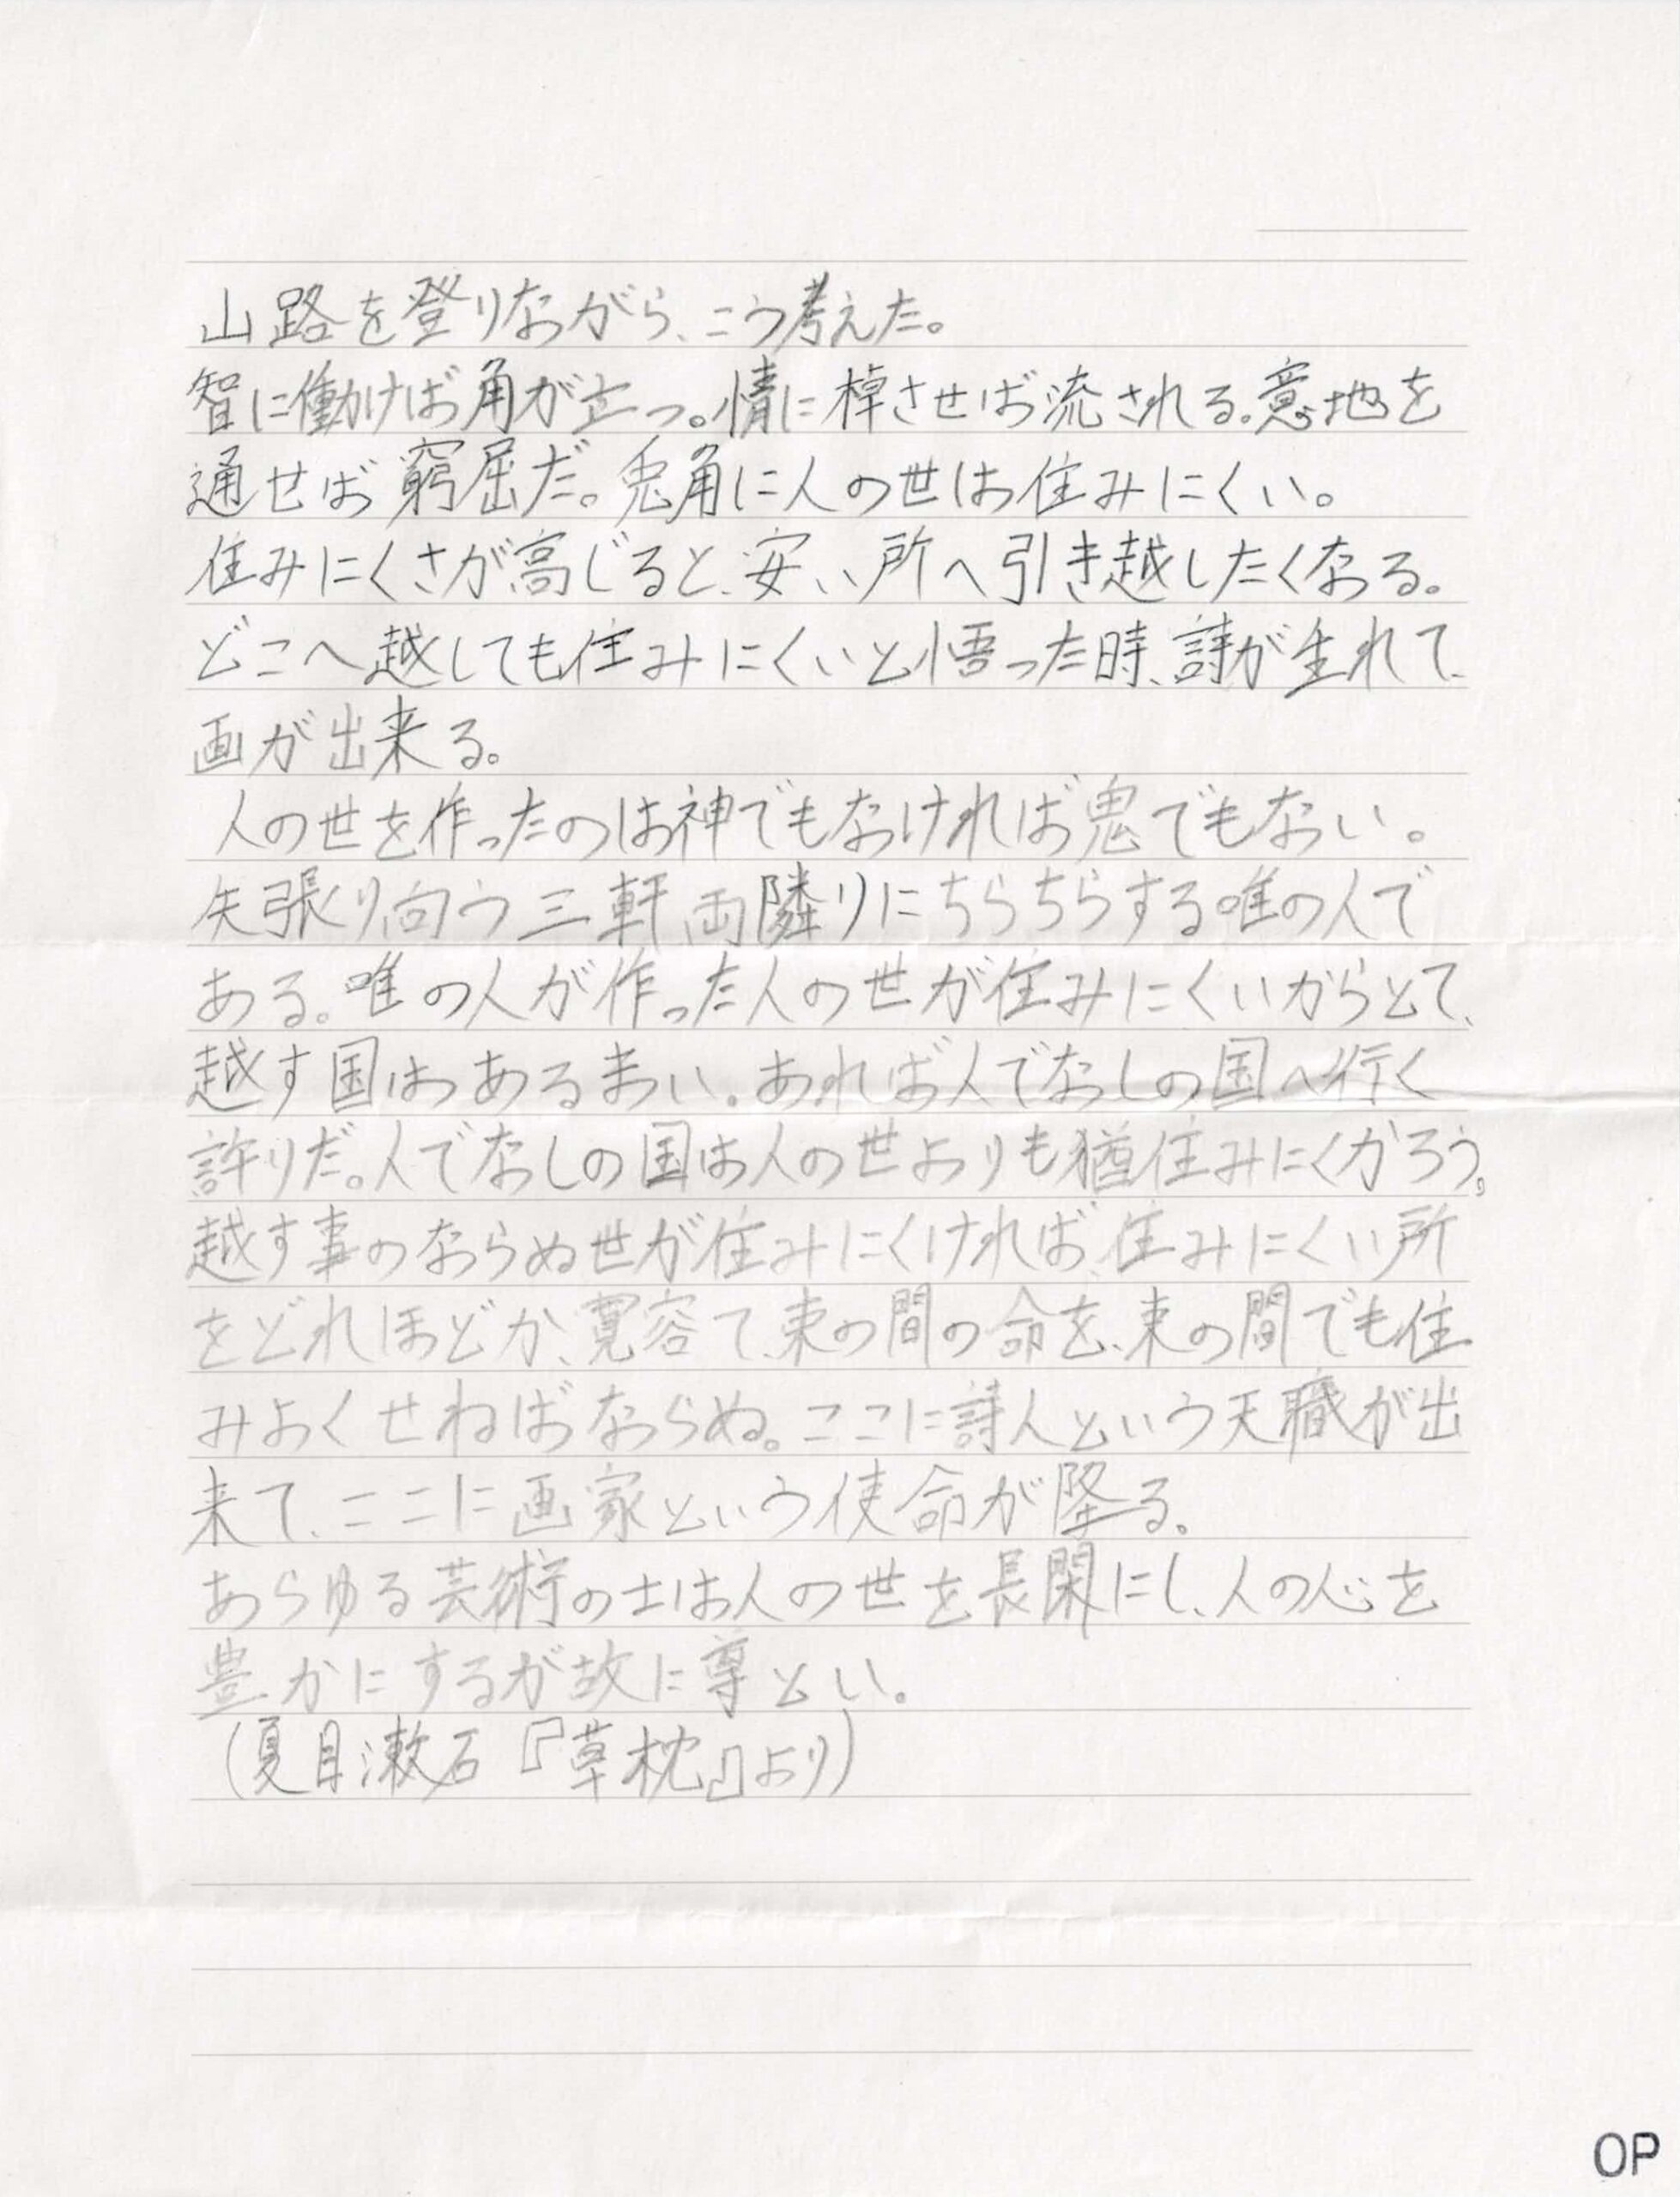 夏目漱石『草枕』の冒頭「山道を登りながら、こう考えた。」で始まる一連の文章が、横書きで筆写されています。